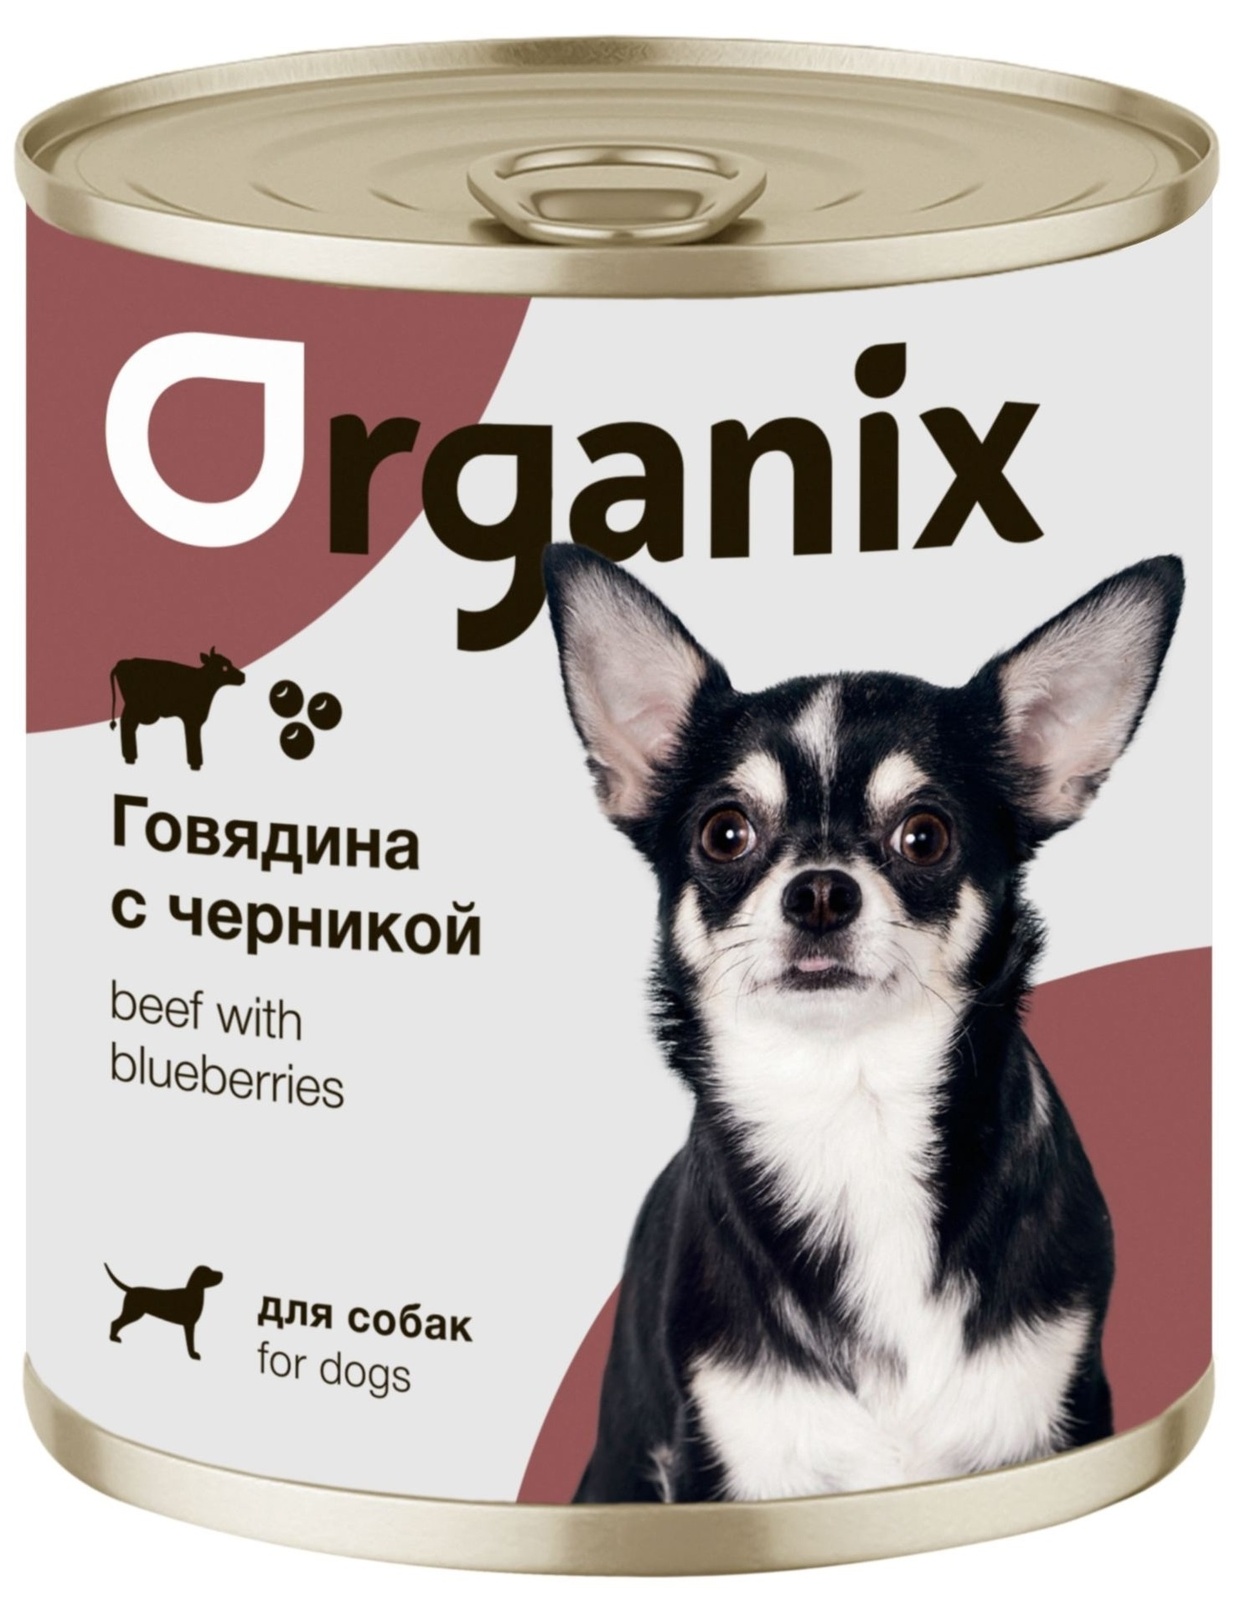 Organix консервы Organix консервы для собак Заливное из говядины с черникой (400 г) organix консервы organix консервы для собак индейка с овощным ассорти 400 г